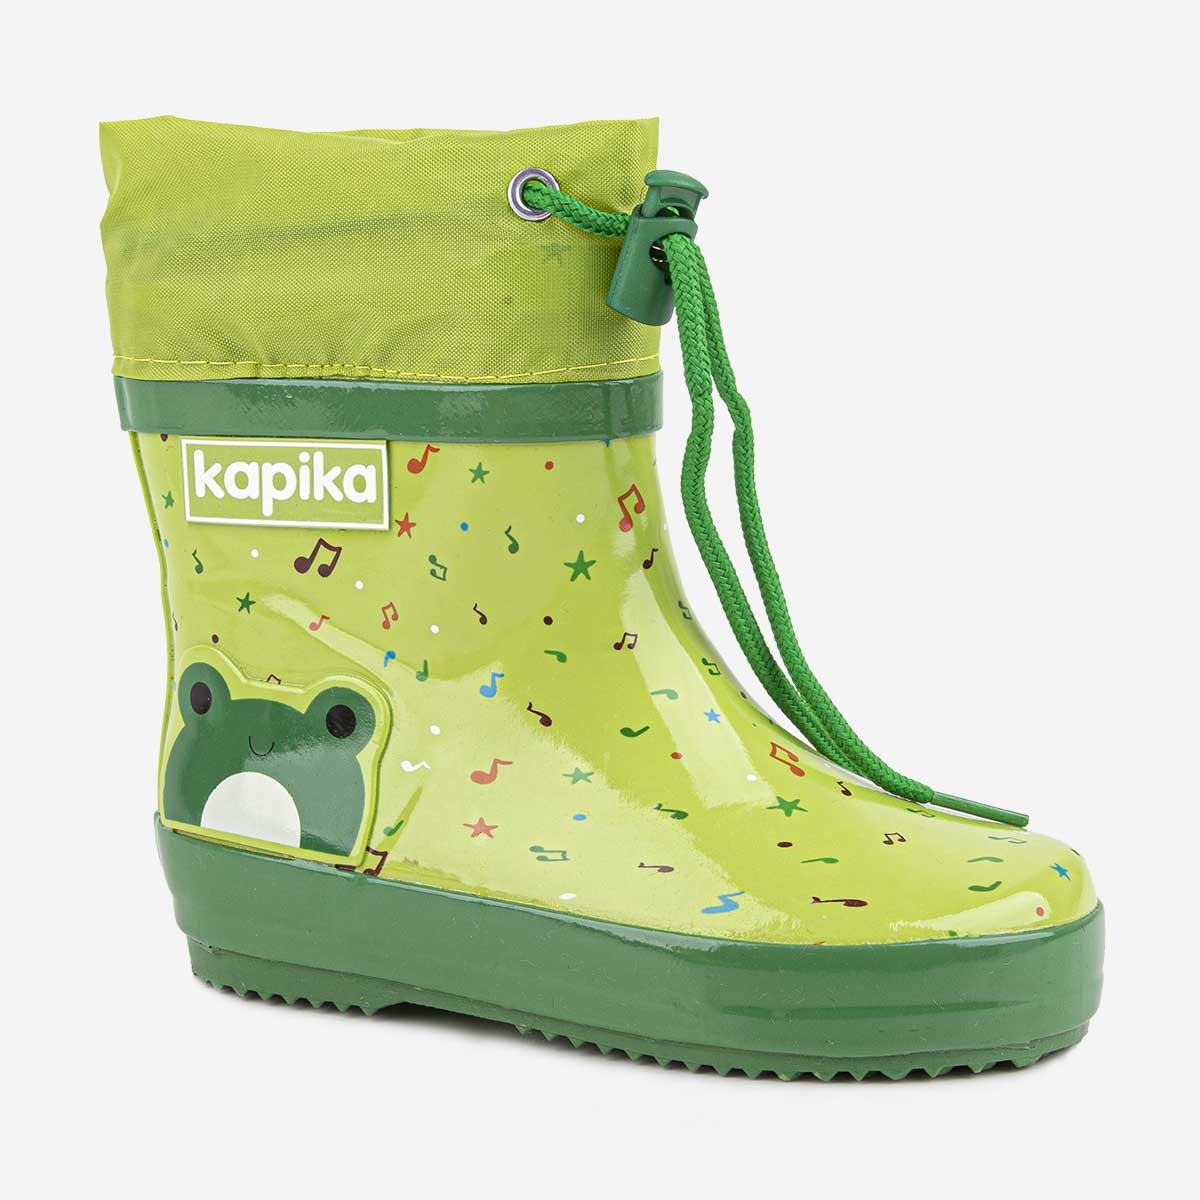 Резиновые сапоги Kapika 1429т, цвет зеленого, размер 25.